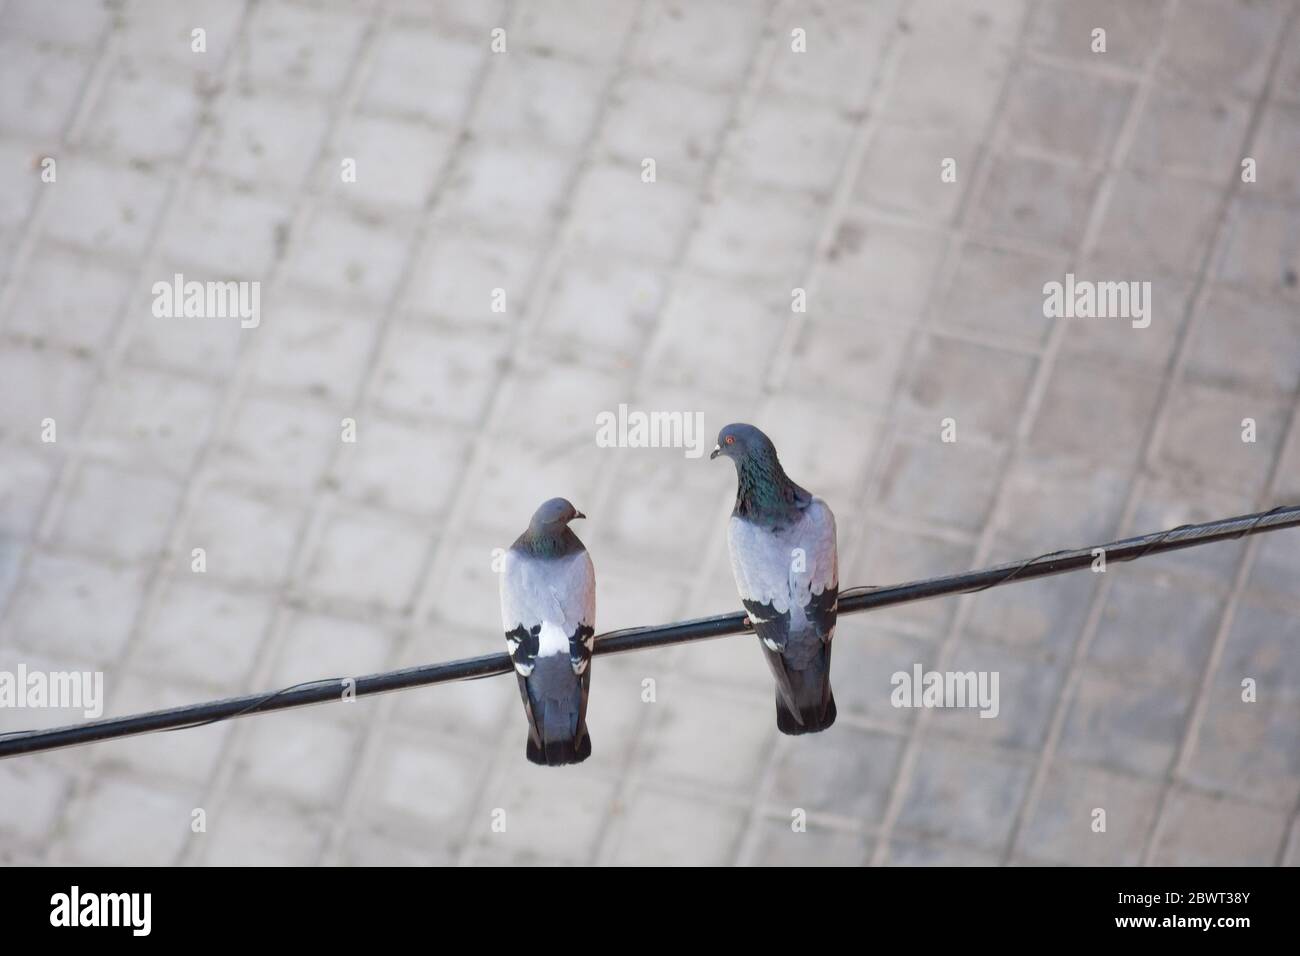 Concetto di amore: Vista aerea di due piccioni che si guardano l'uno all'altro appollaiati su un cavo elettrico nella strada con sfondo sfocato Foto Stock